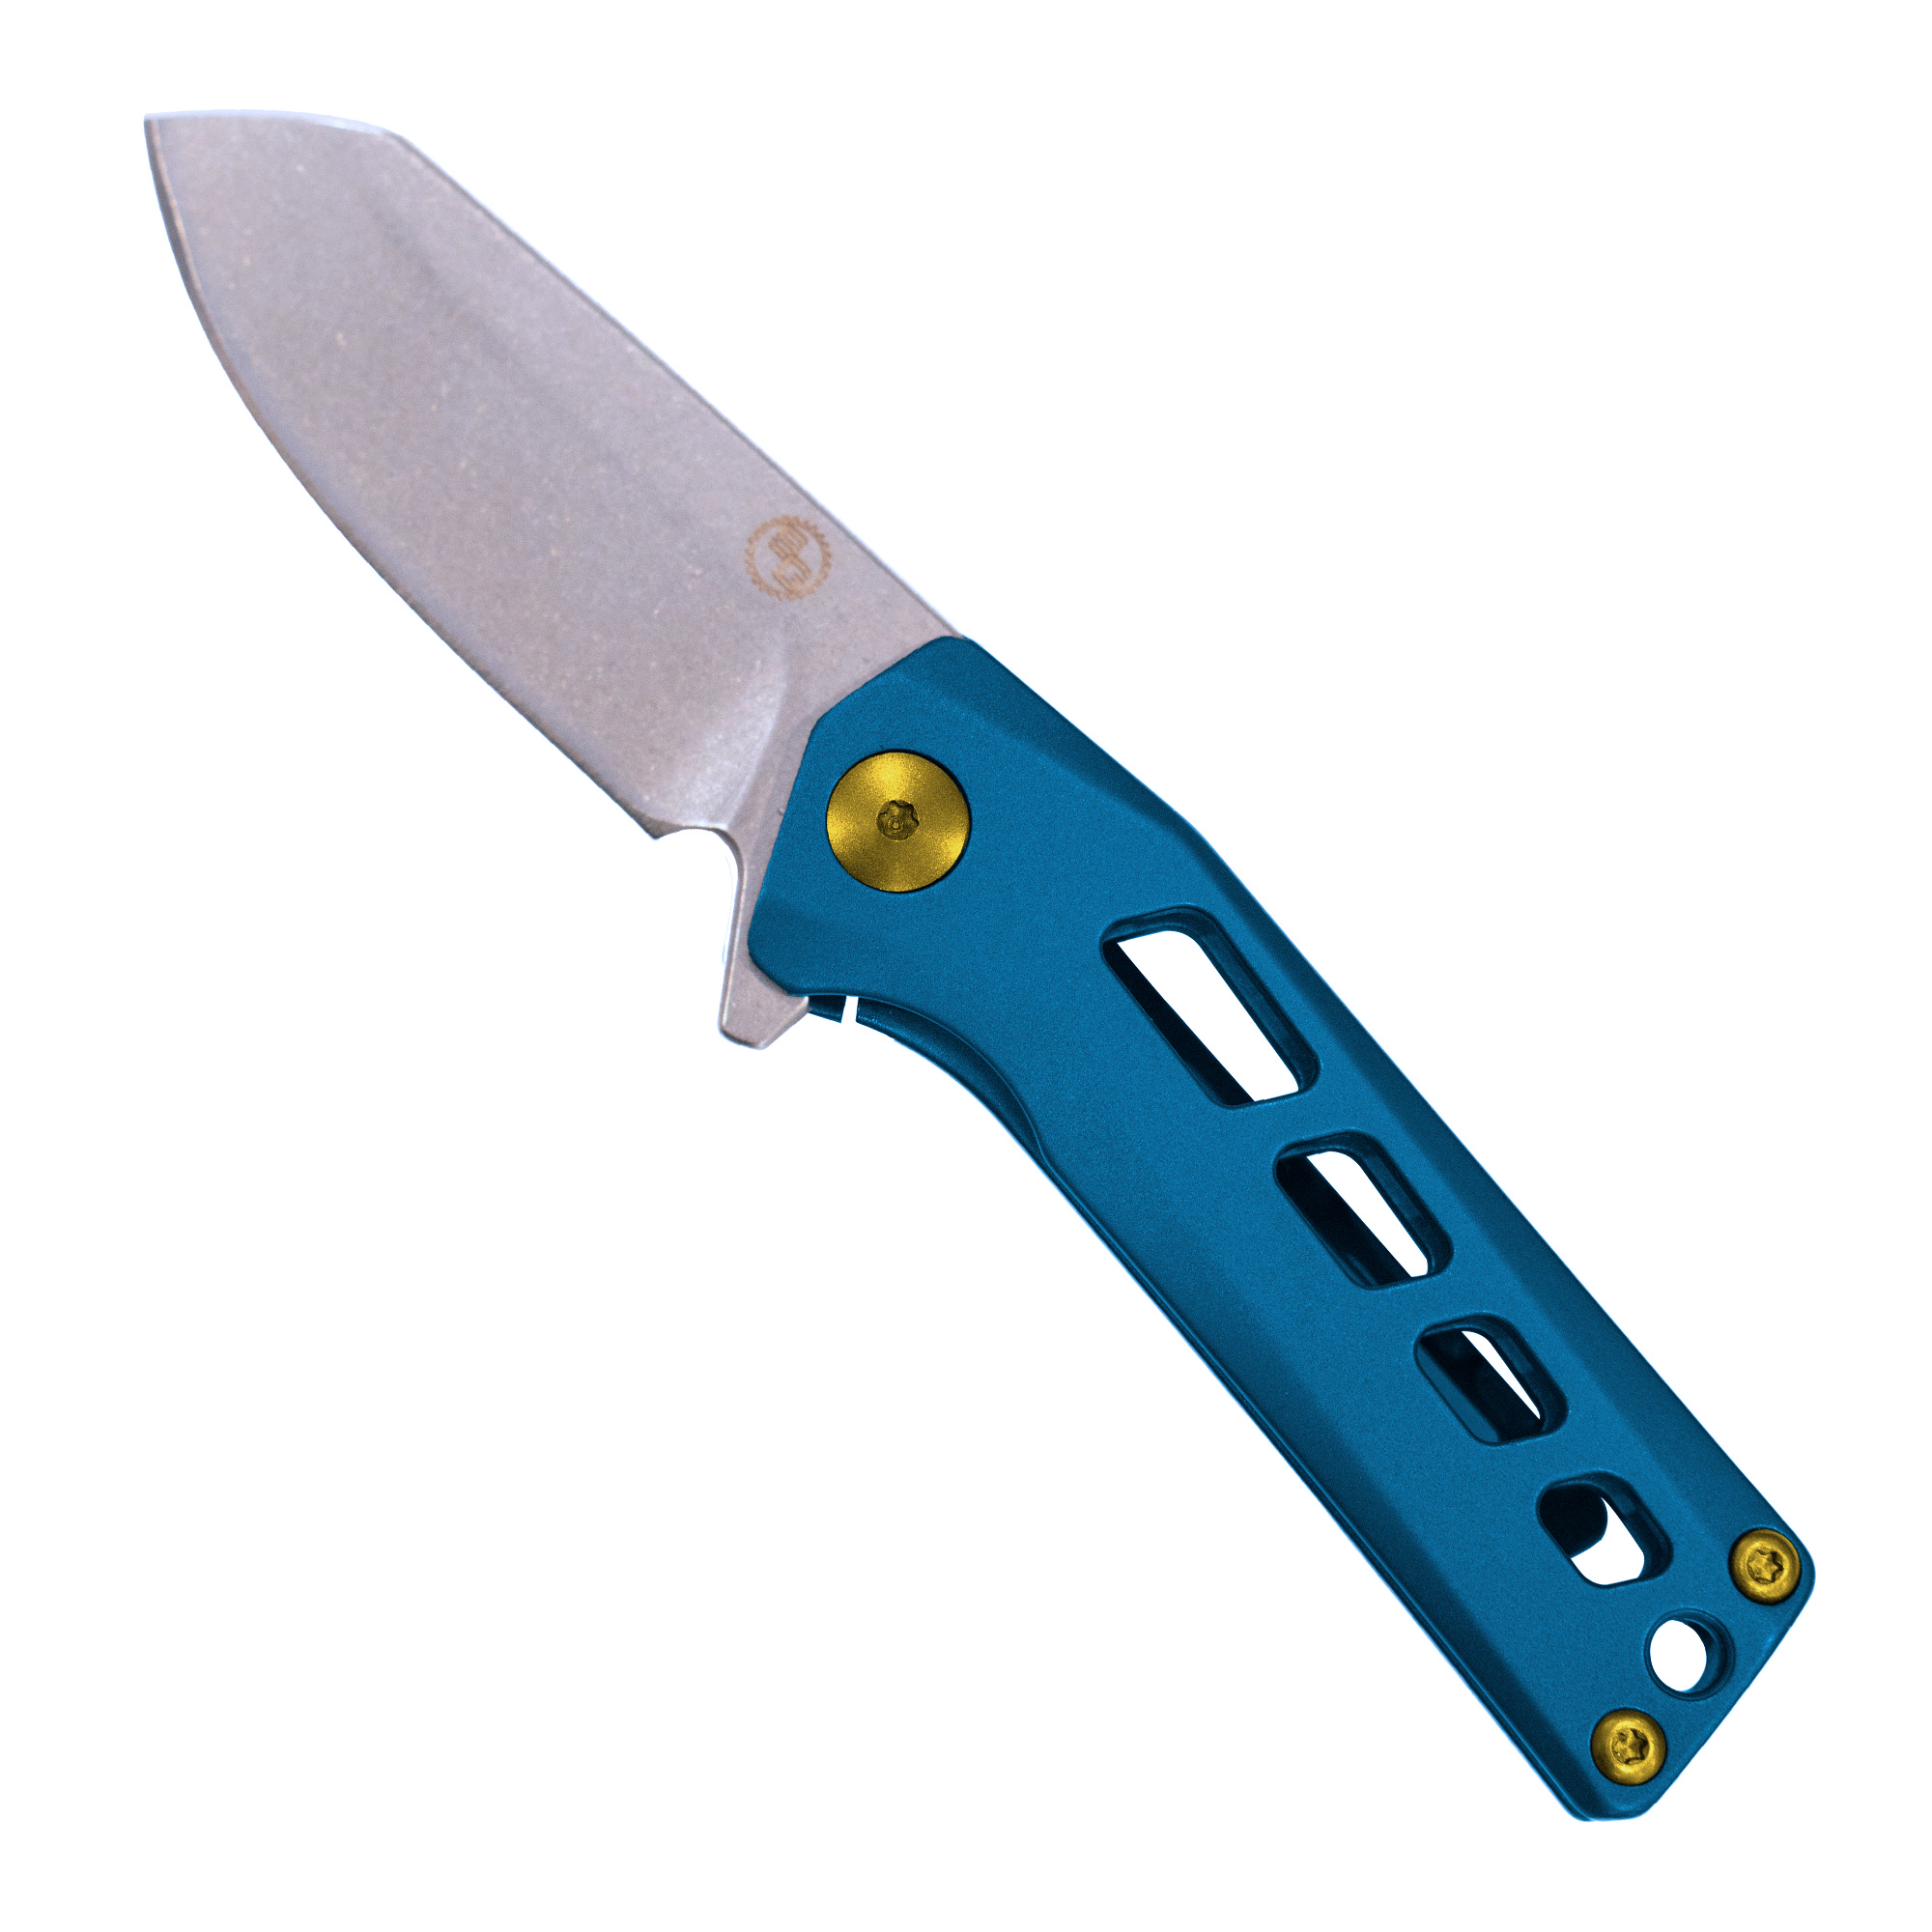 Slinger Flipper Knife - Blue